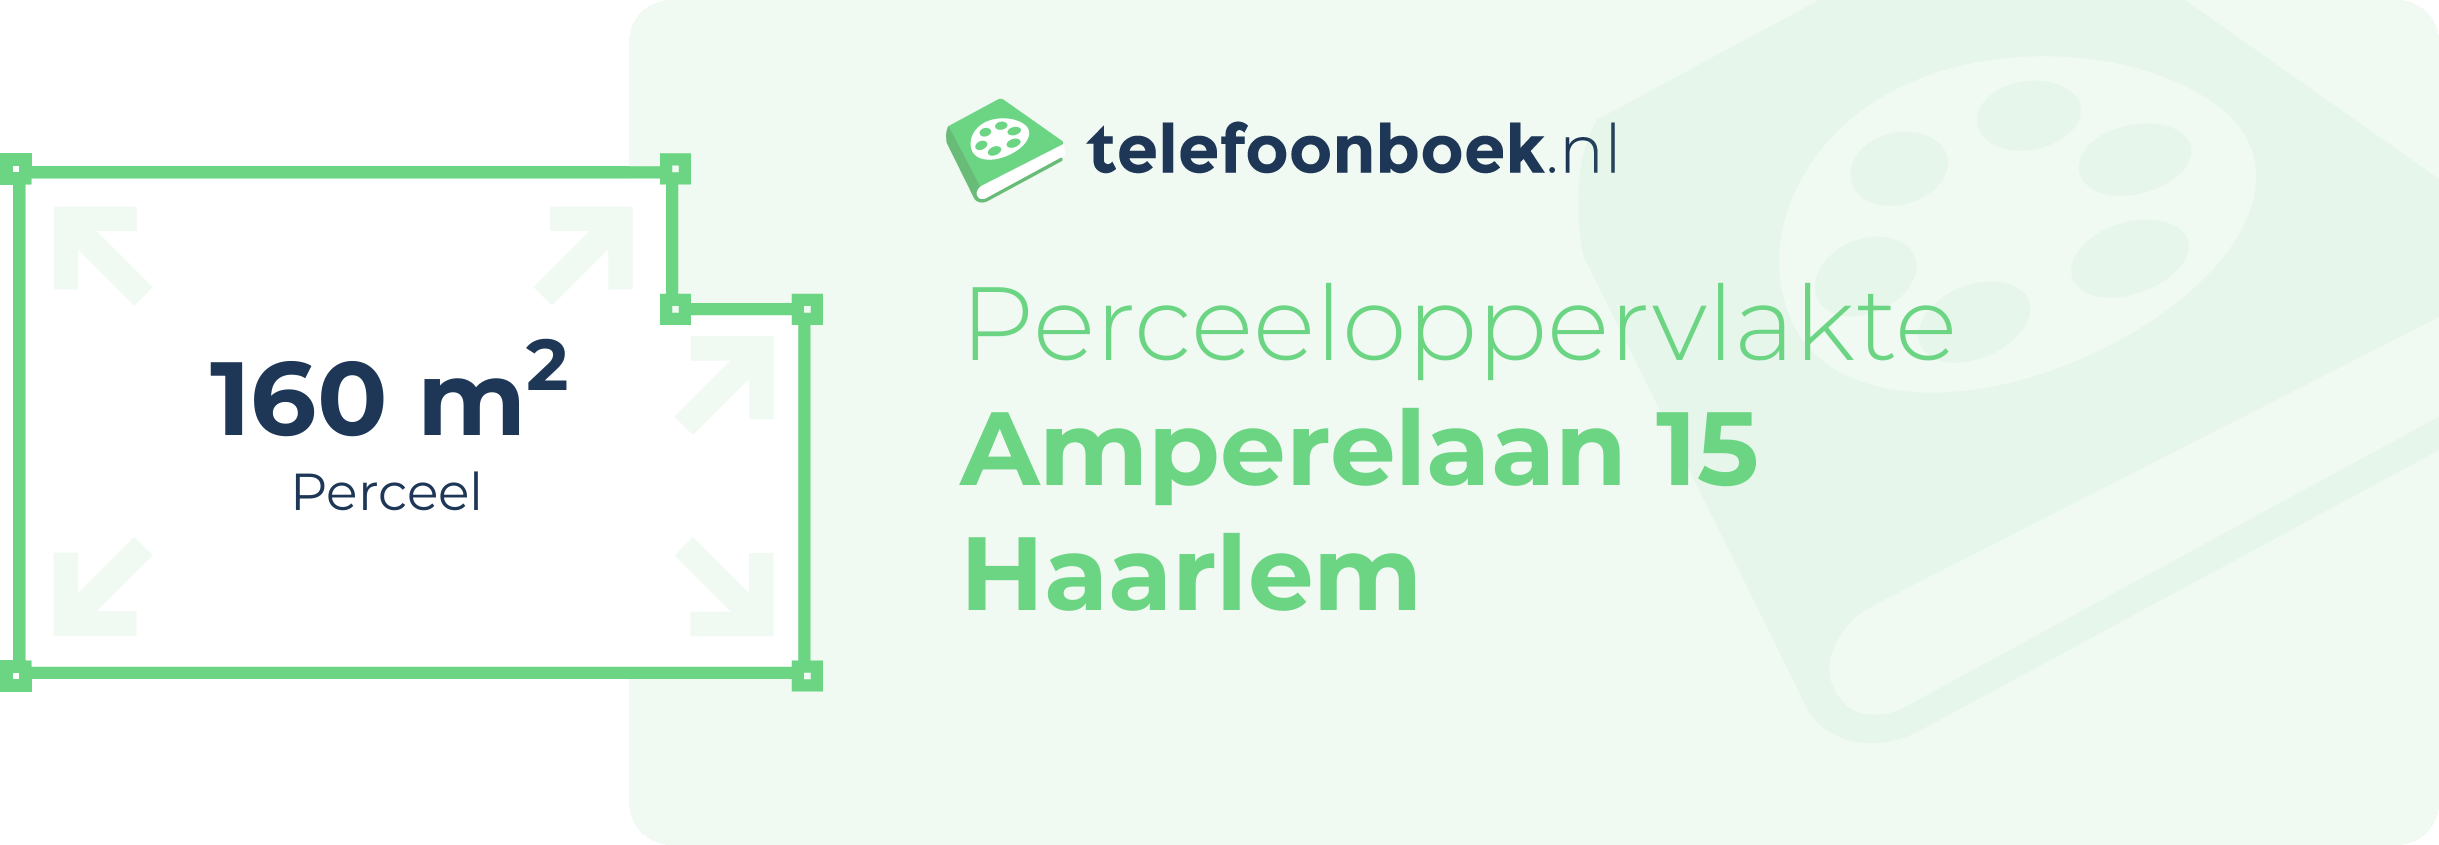 Perceeloppervlakte Amperelaan 15 Haarlem